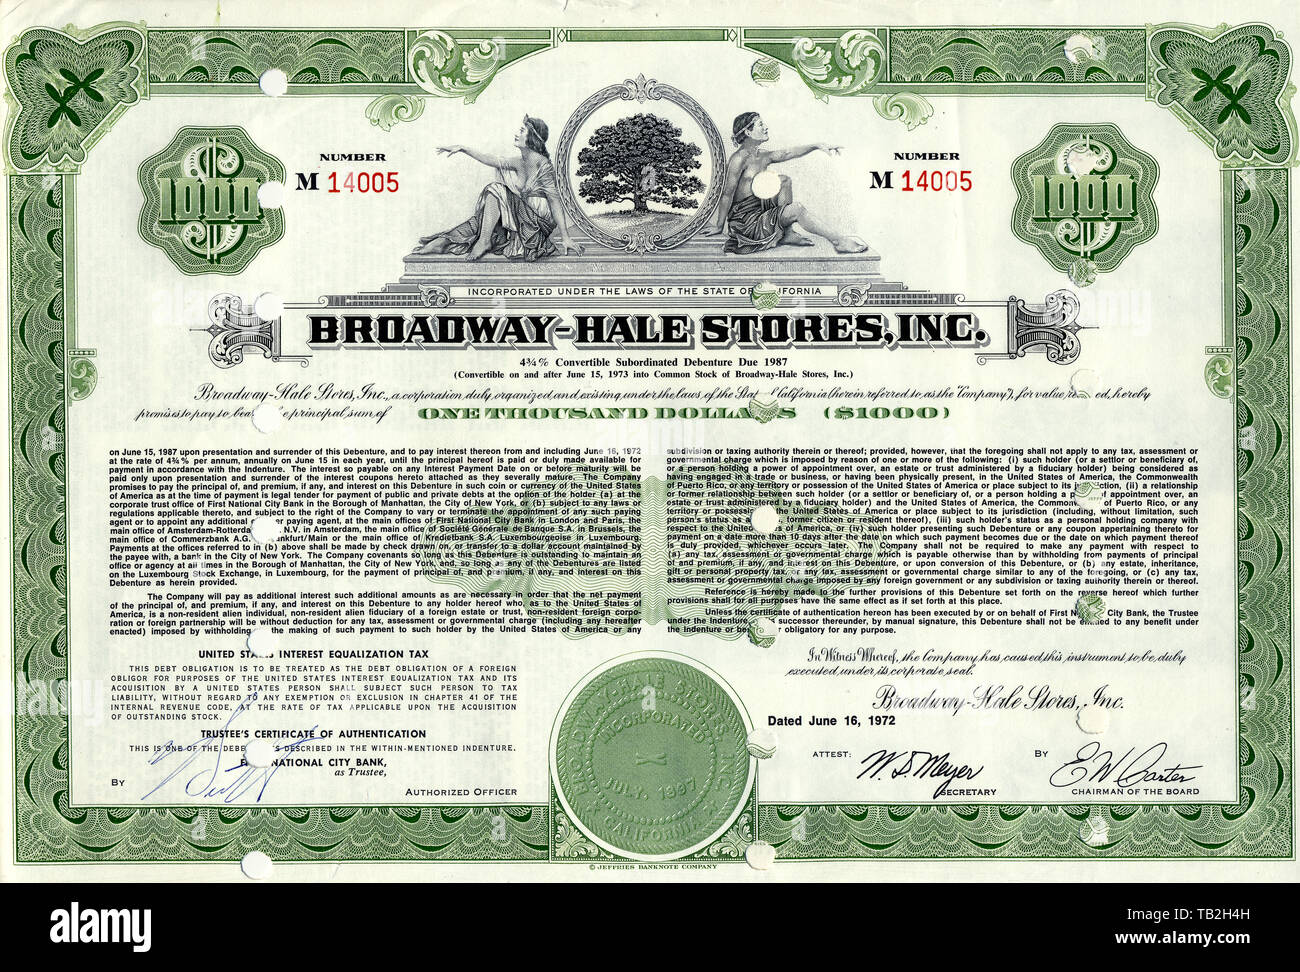 Historische Aktie, Allegorische Darstellung, Supermarktkette, Hale Brothers fusionierte mit Broadway Department Stores zu Broadway-Hale Stores Inc., späterer Name war Carter Hawley Hale Stores, 1972, Kalifornien, USA Stock Photo